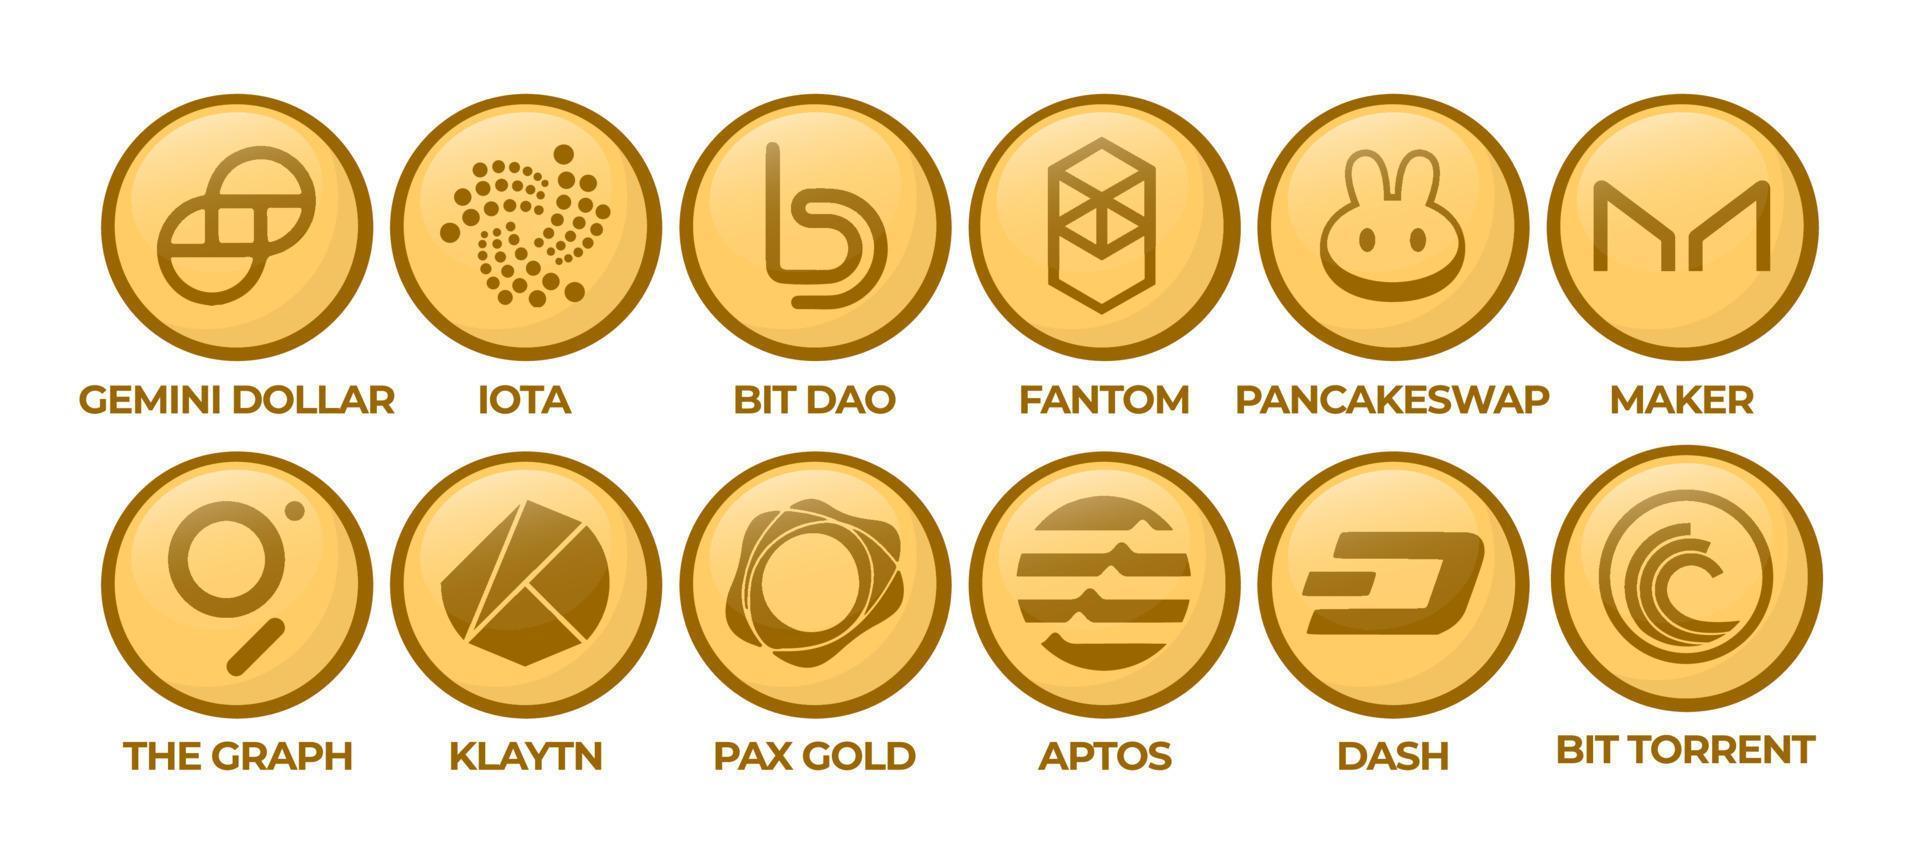 conjunto de monedas con el logotipo de criptomoneda dólar gemini, iota, bitdao, fantom, intercambio de panqueques, fabricante, el gráfico, klaytn, pax gold, aptos, guión, bittorrent vector